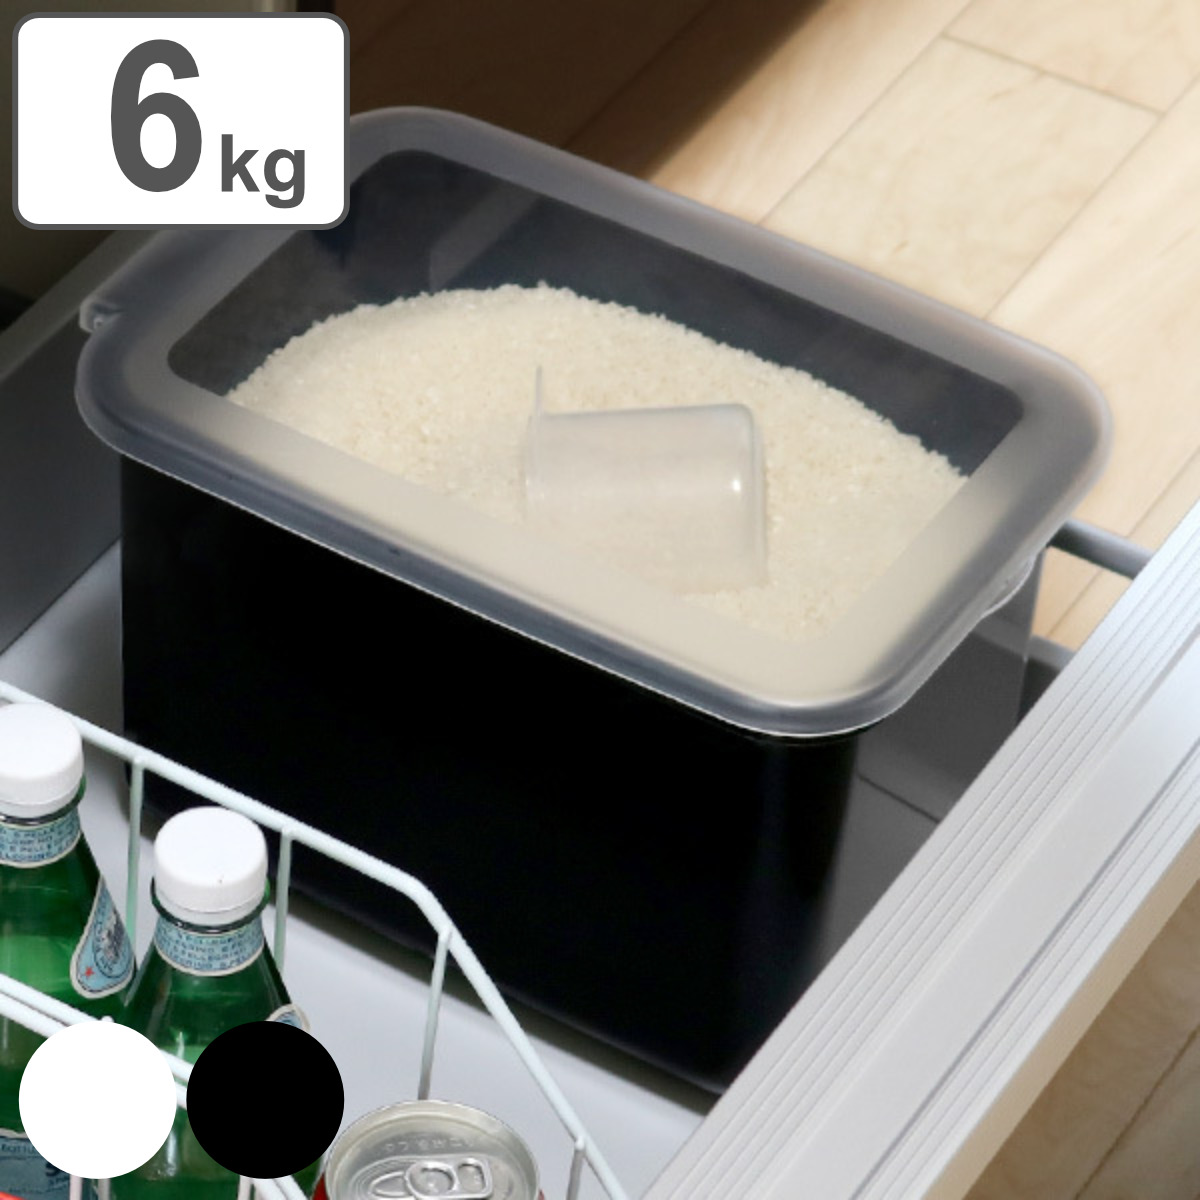 米びつ 5kg用 システムキッチン 引き出し用 Soroelusmart ソロエルスマート ライスボックス 6kg